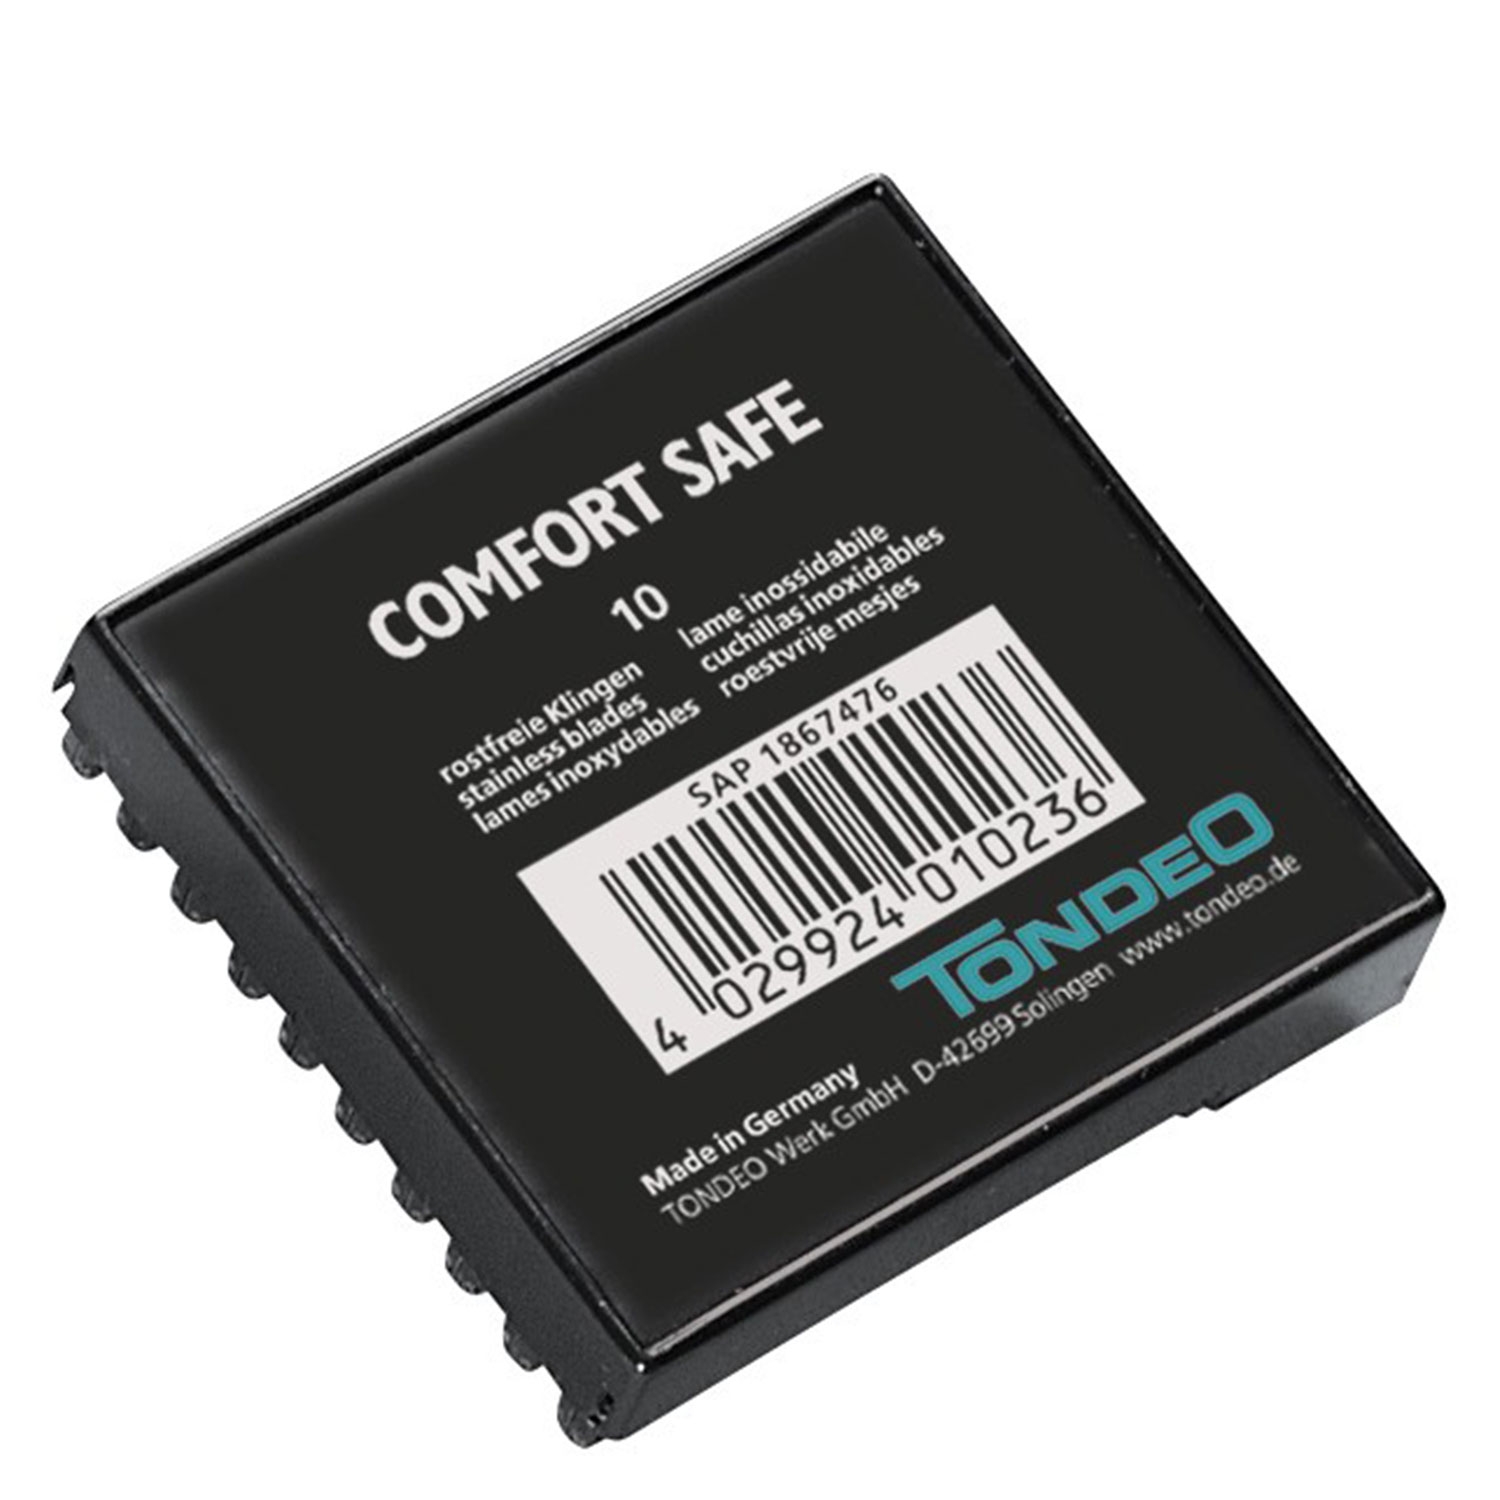 Produktbild von Tondeo Blades - Comfort Safe Blades